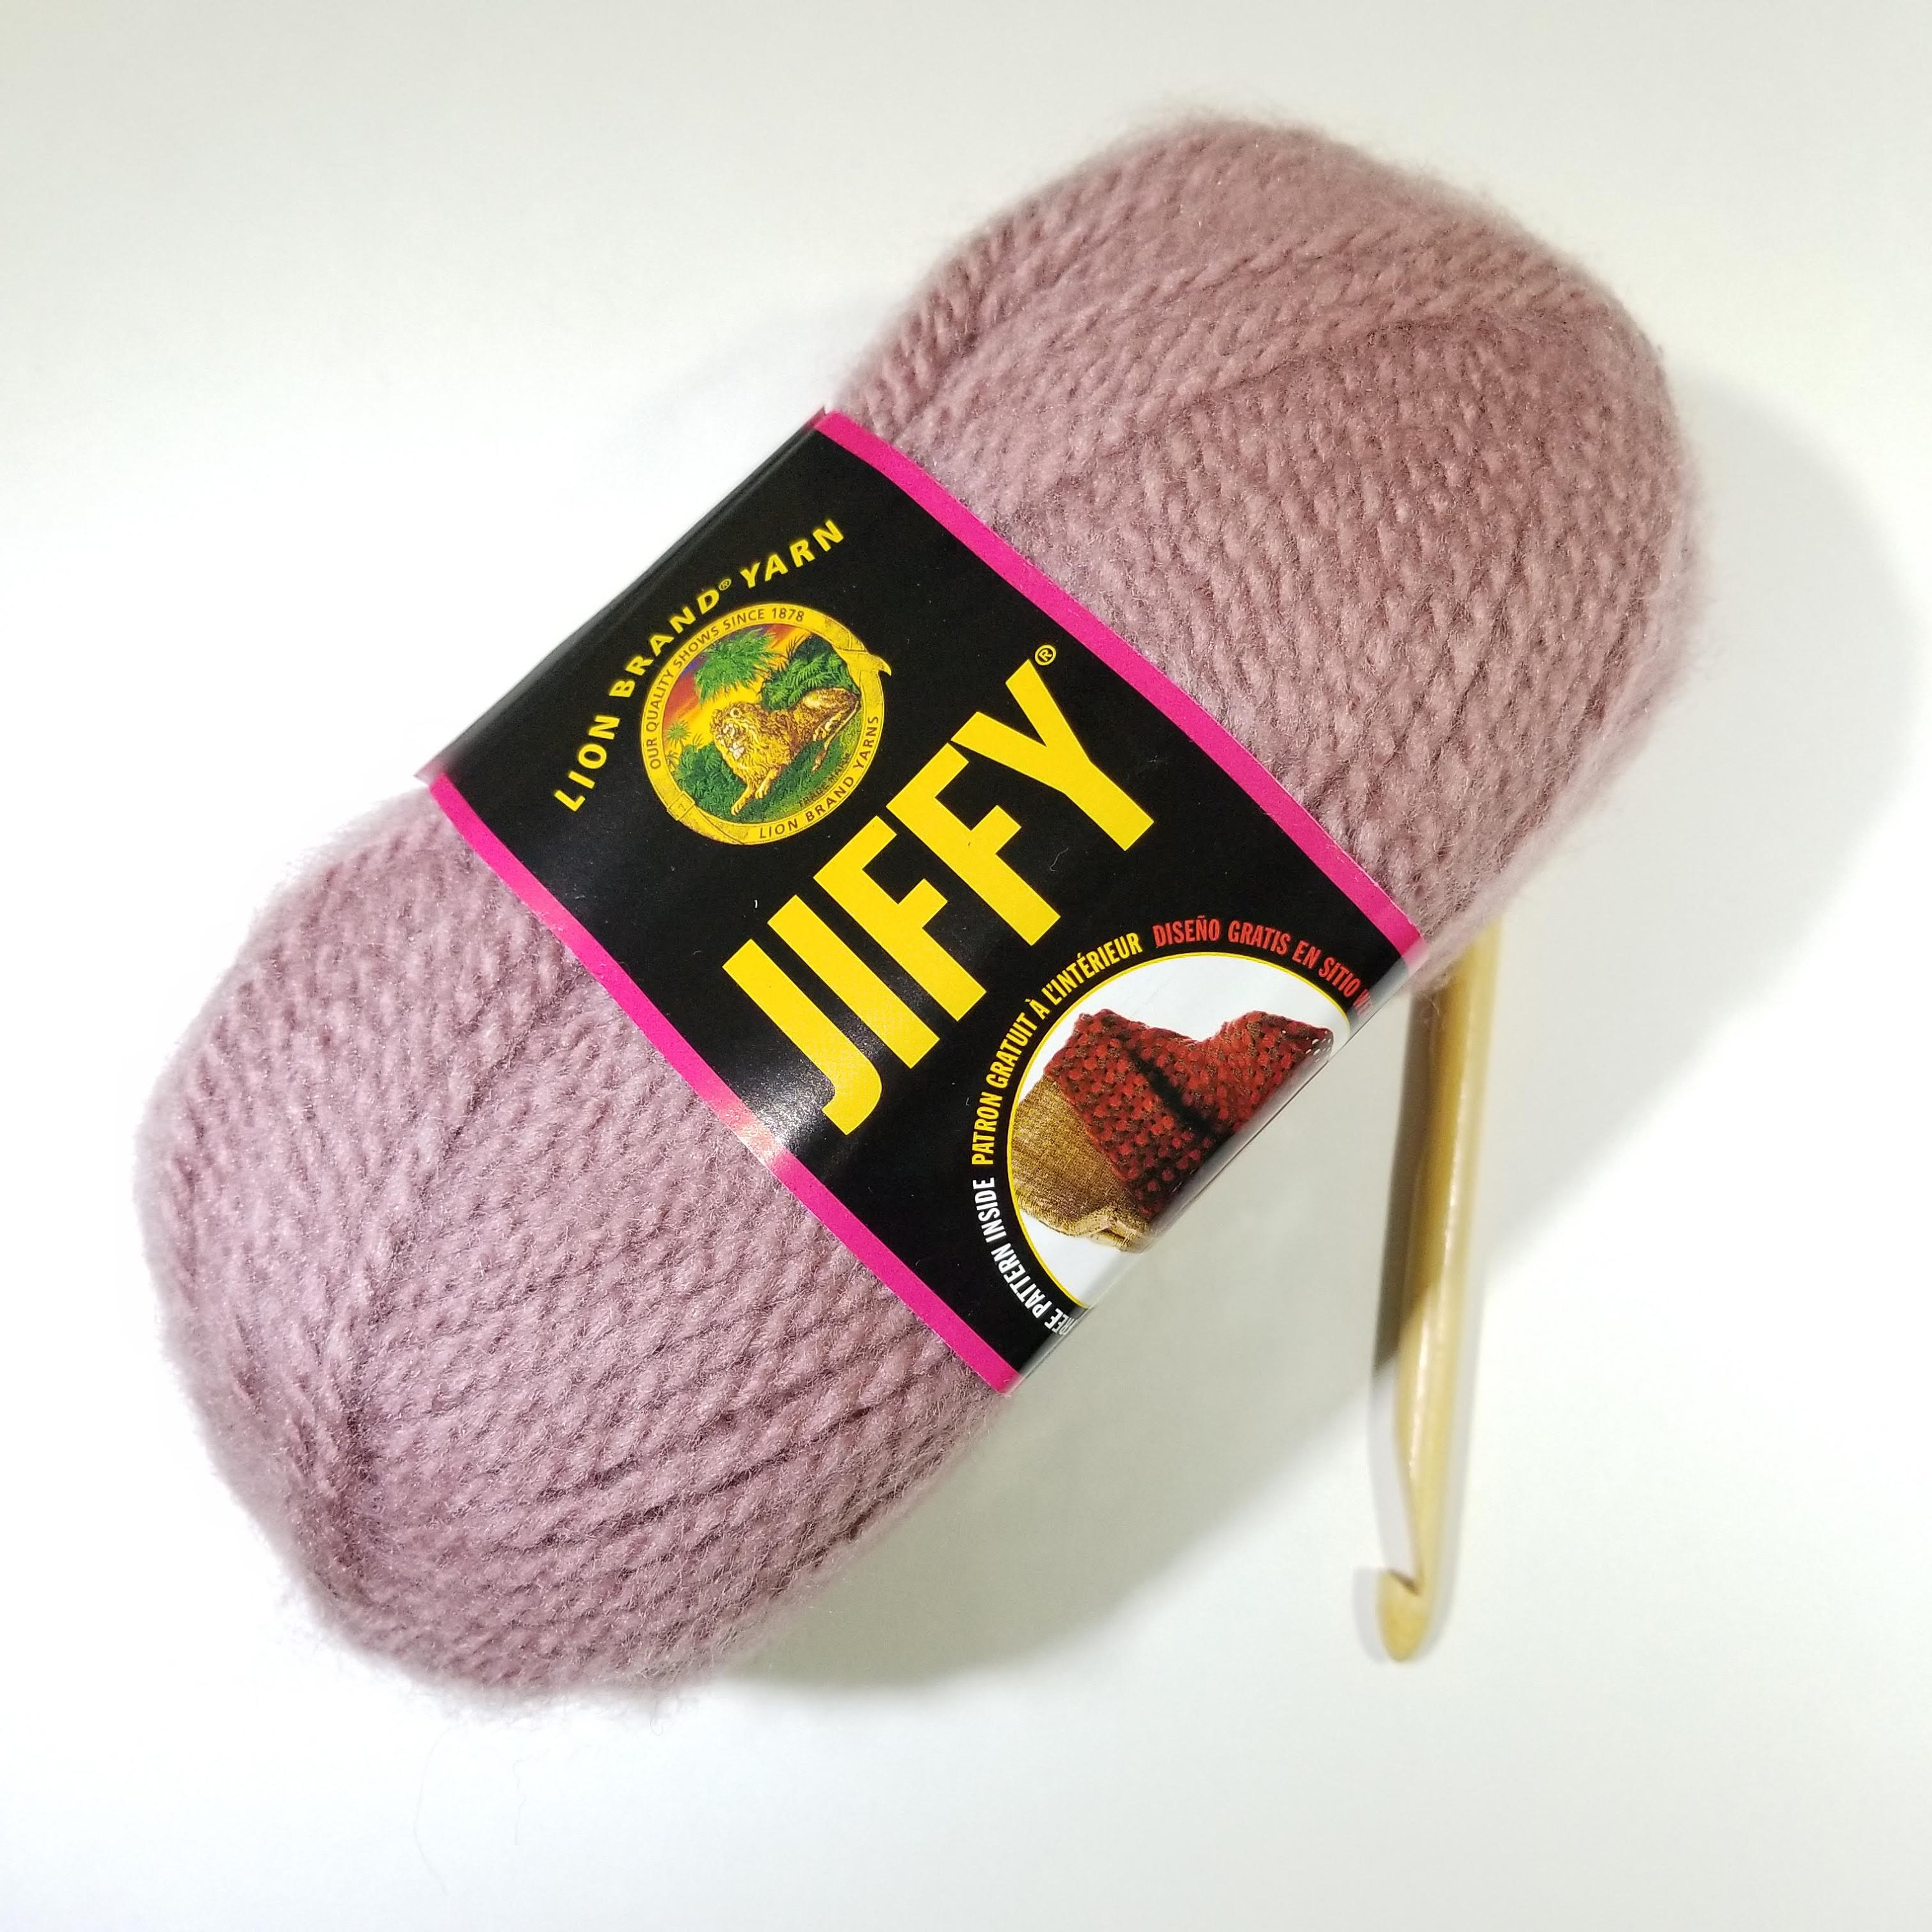 Jiffy Yarn by Lion Brand, Bulky Weight Yarn, Fuzzy Yarn, Acrylic Yarn,  Knitting Yarn, Crochet Yarn, Craft Yarn, Weaving Yarn, Scarf Yarn